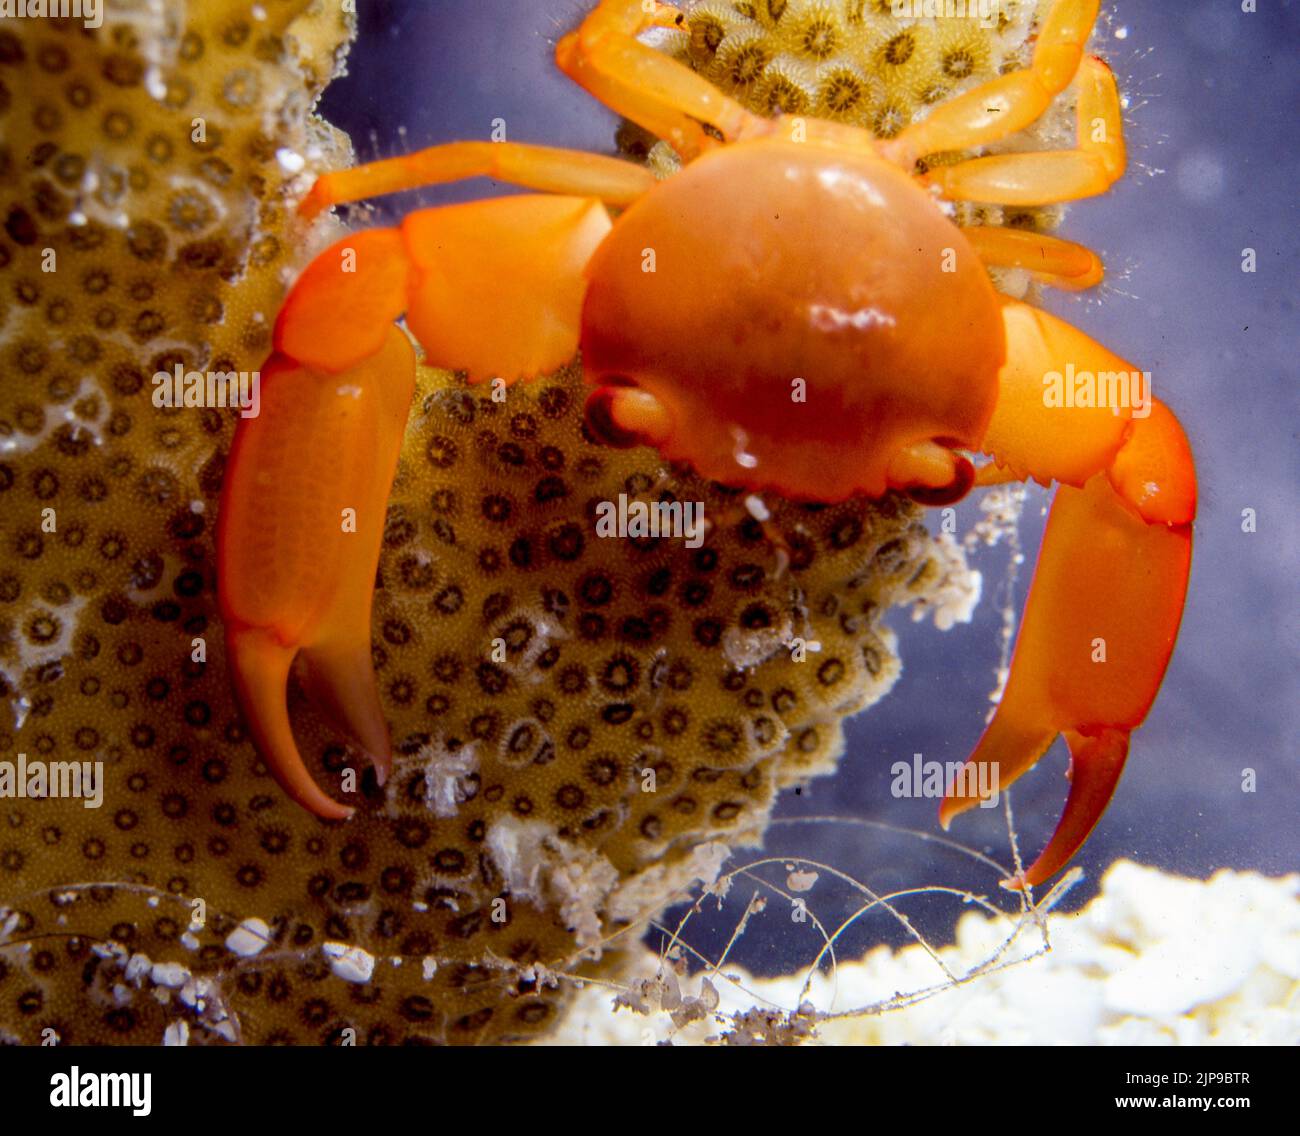 Trapezia ferruginea, a guard crab from the Maldives. Stock Photo